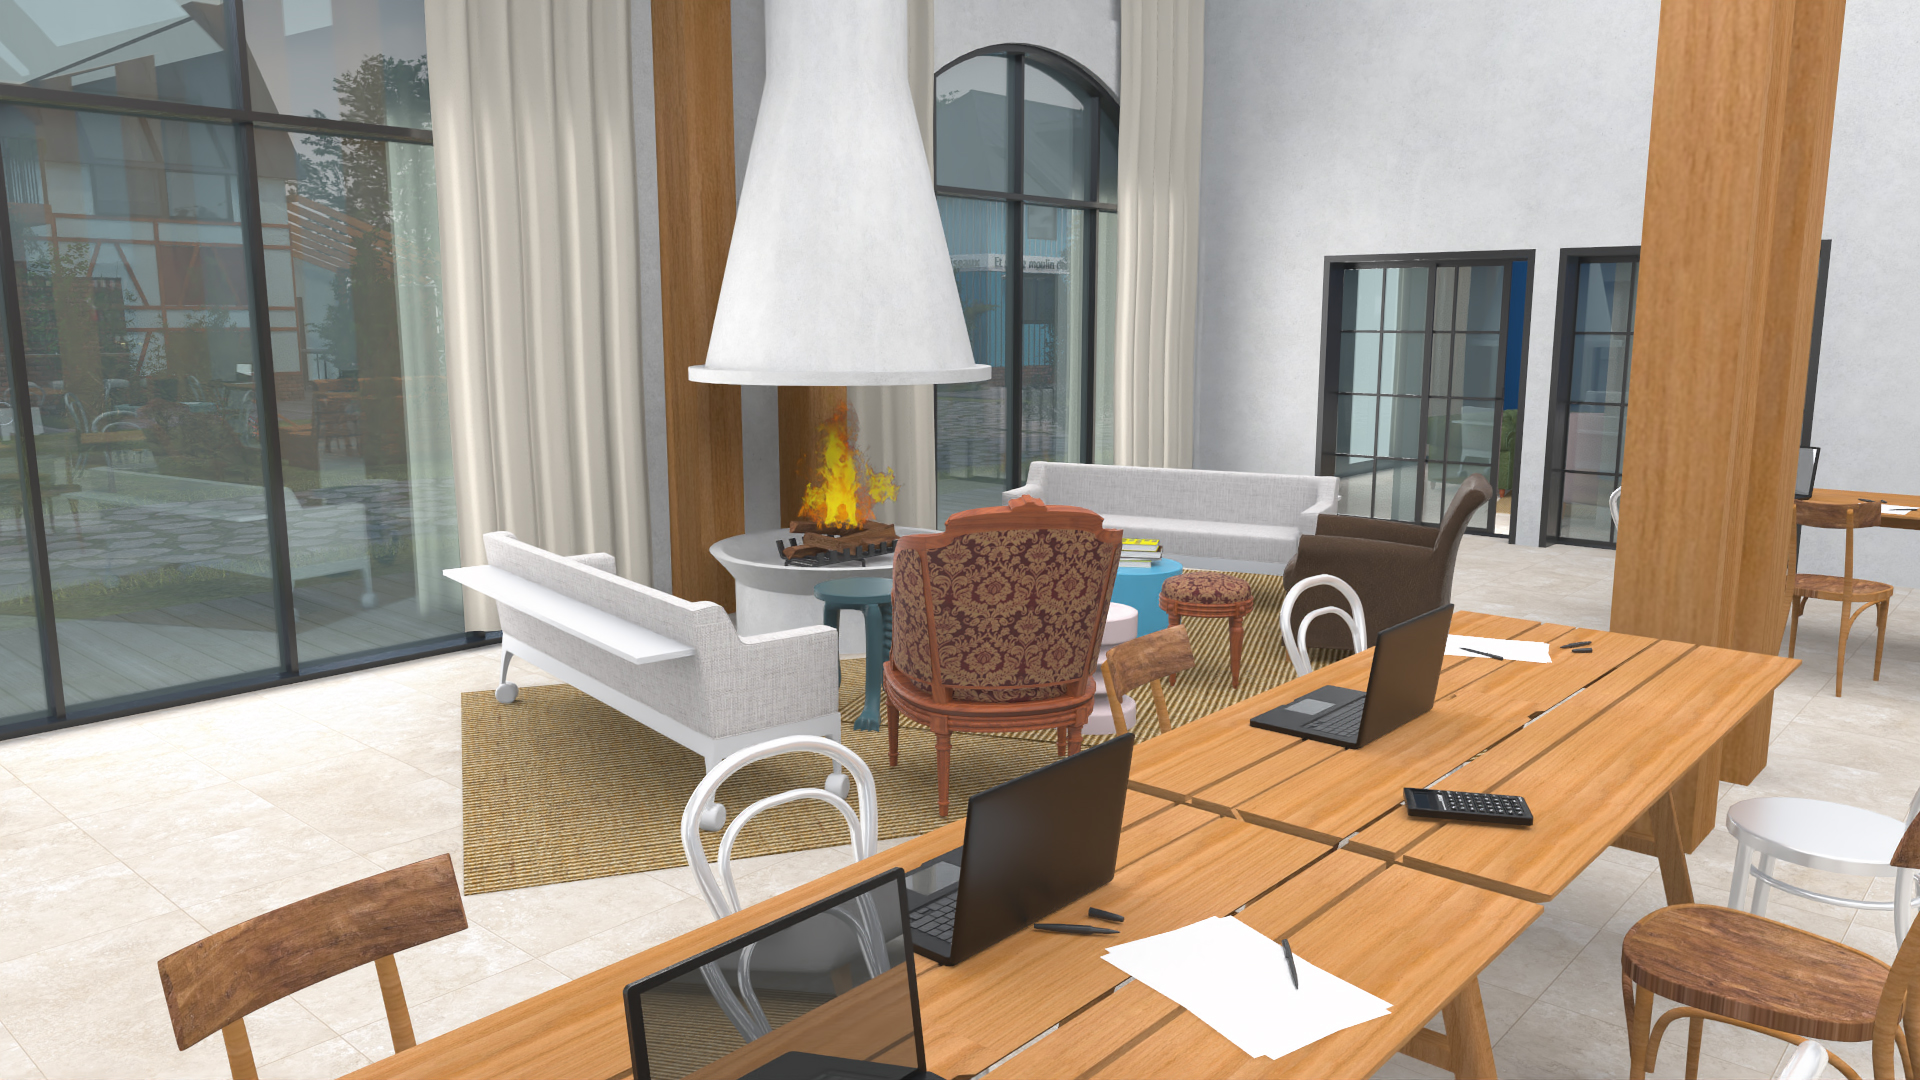 Visite virtuelle - vue intérieure d'une salle de réception avec cheminée